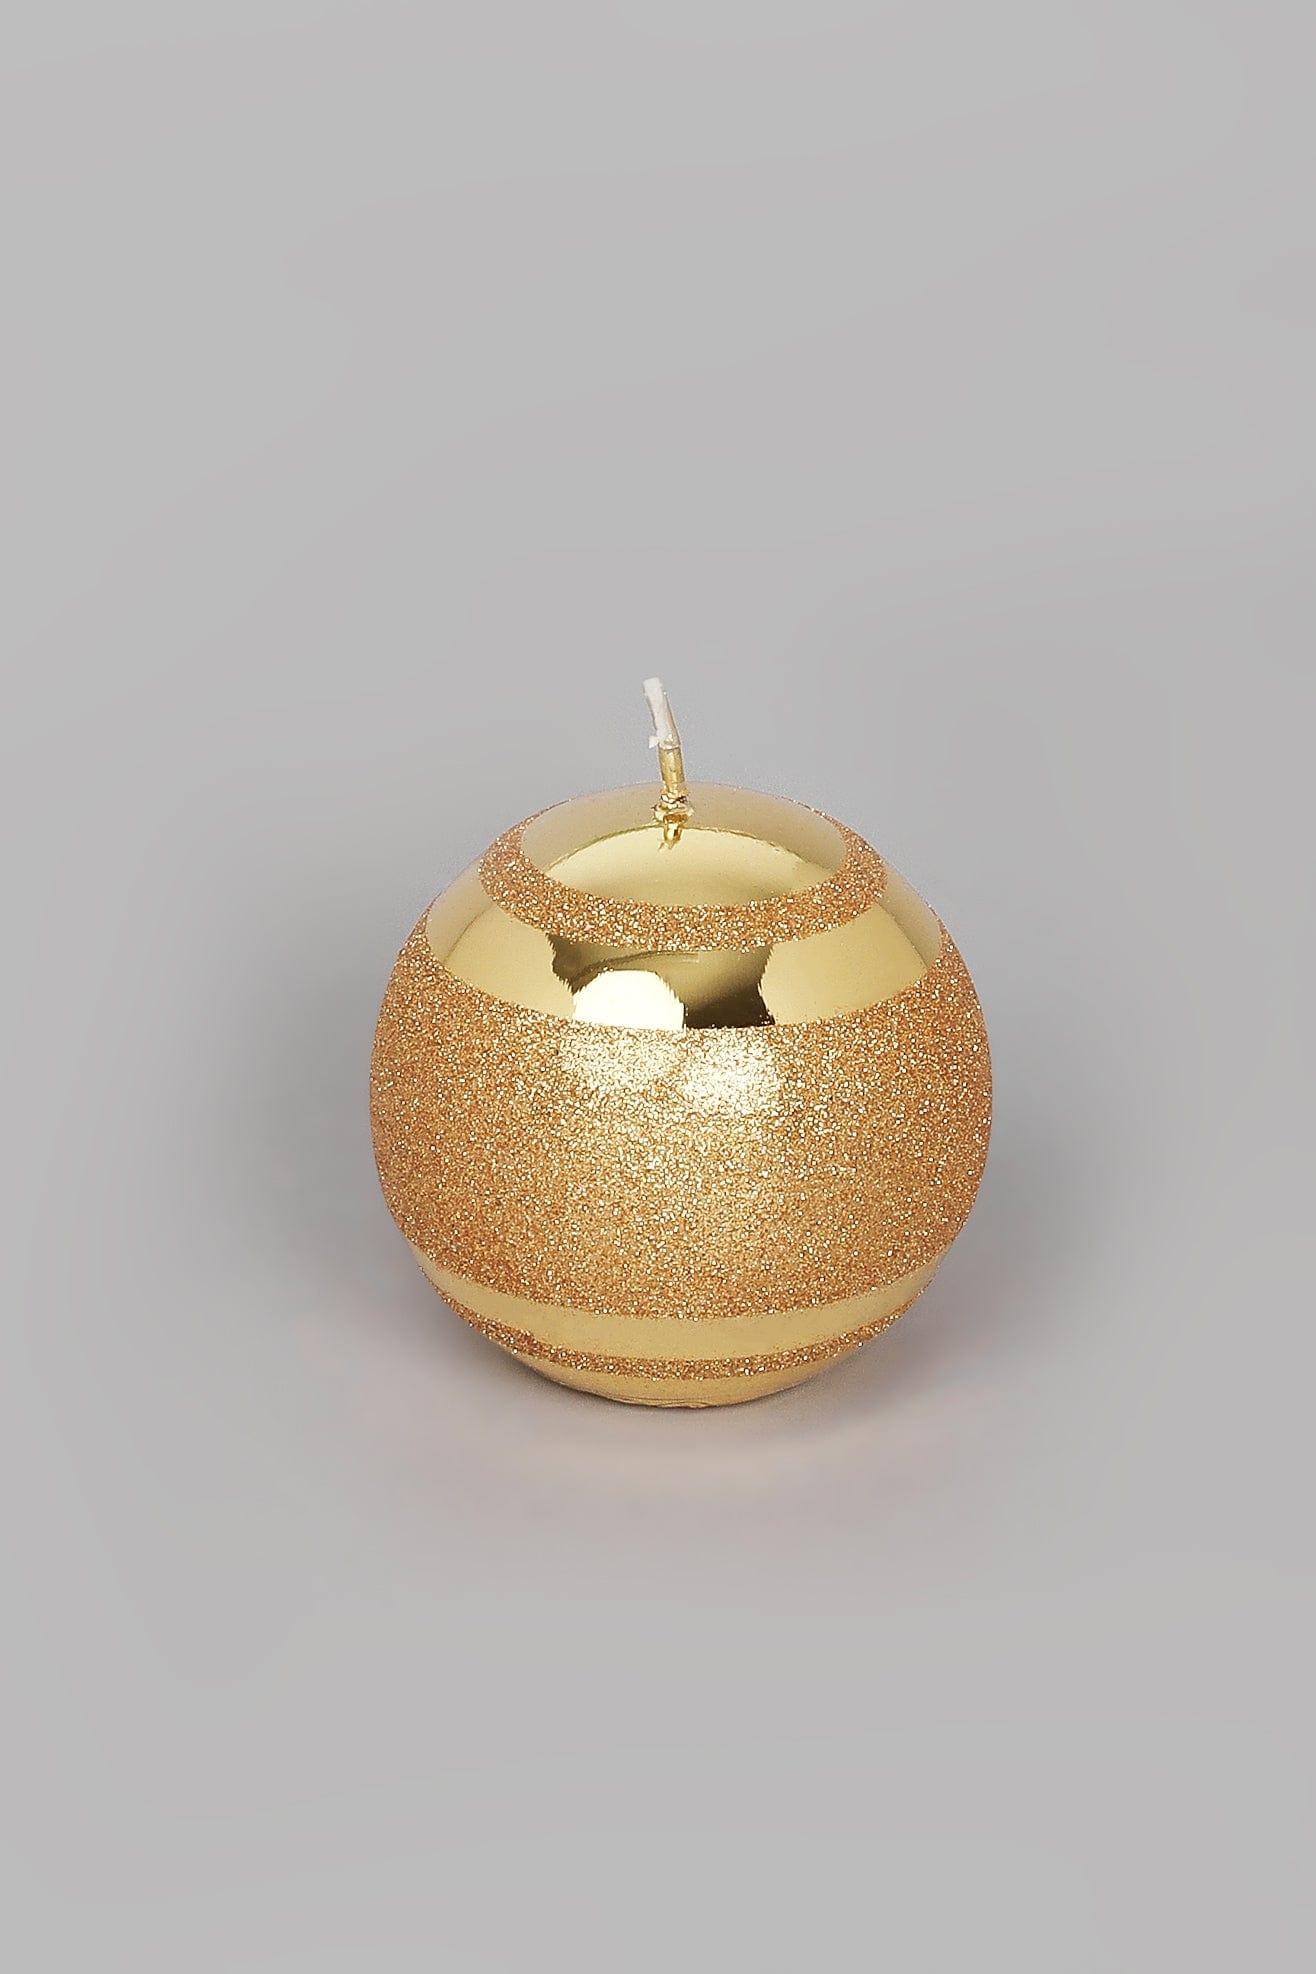 G Decor Candles & Candle Holders Gold / Ball Gold Glass Effect Striped Glitter Gloss Ball Pillar Candles